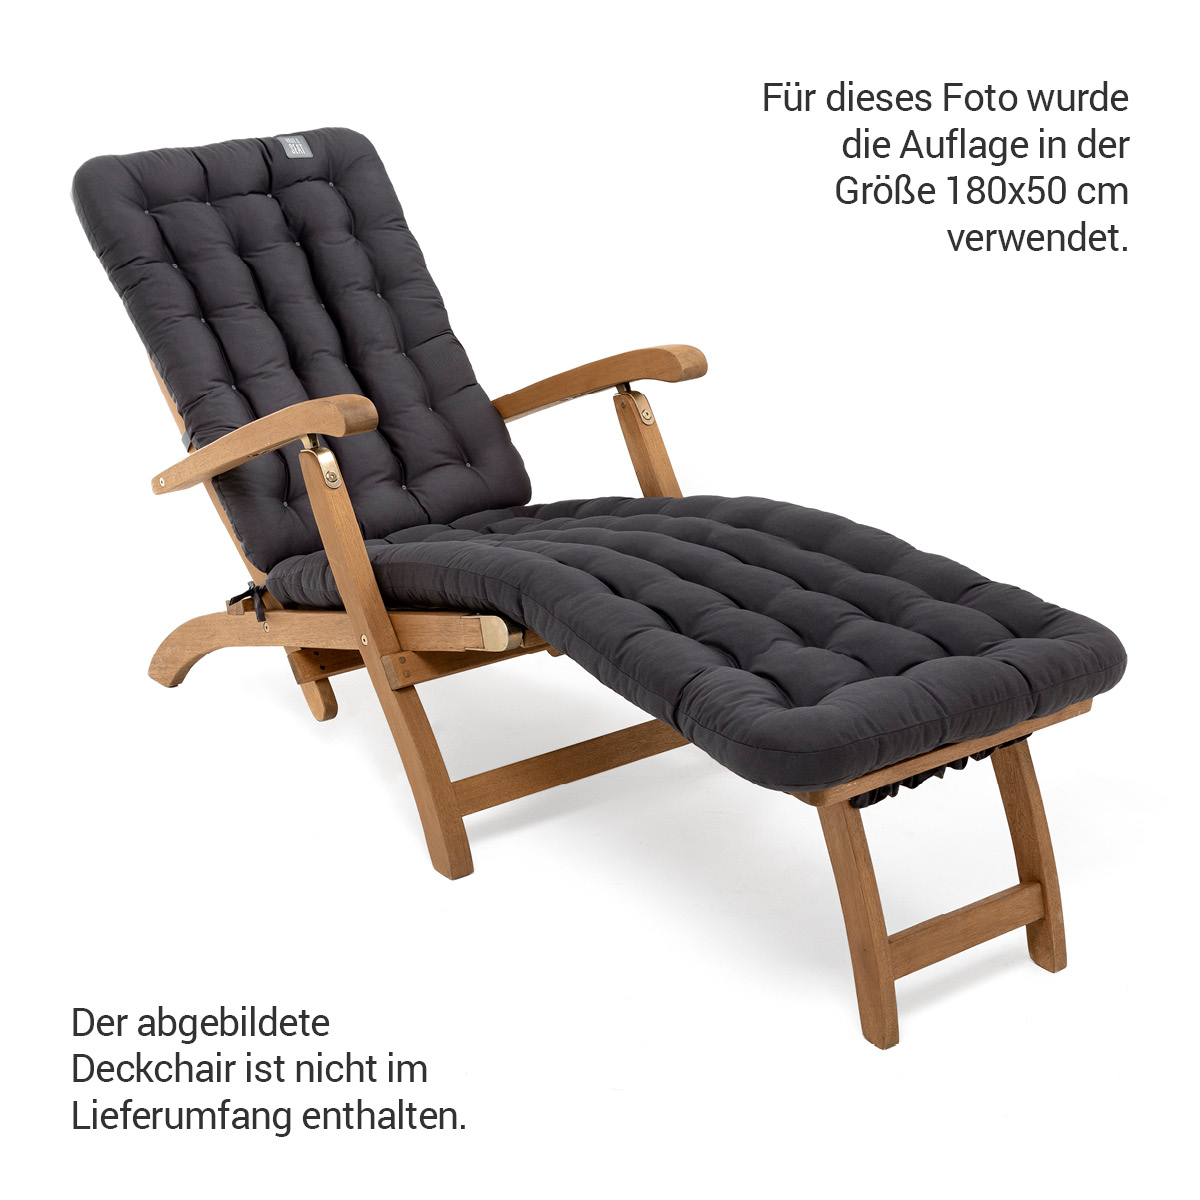 Gepolsterte Sitzauflage für Deckchair auf Liegestuhl  mit Thermo-Komfortpolsterung, Baumwoll-Mischgewebe Grau / Anthrazit | HAVE A SEAT Living